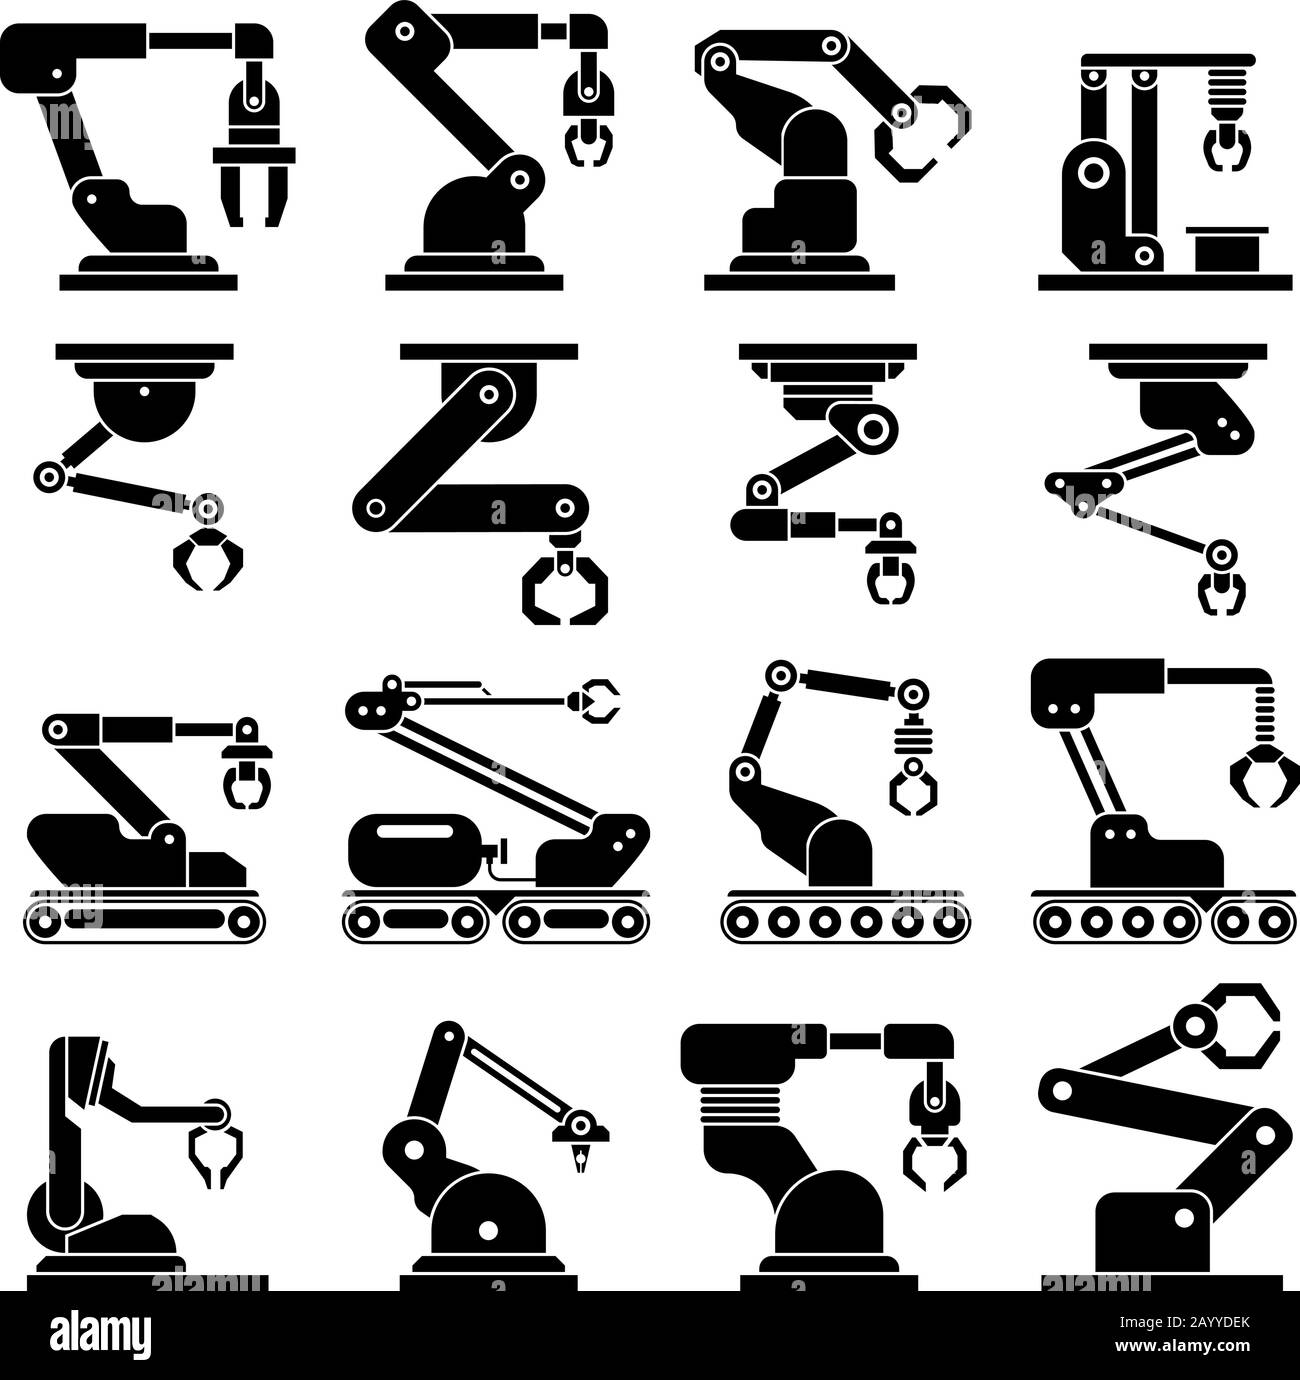 Icone dei vettori del braccio del robot meccanico industriale. Sistema automobilistico robotico industriale. Illustrazione meccanica automatica industriale dell'attrezzo Illustrazione Vettoriale